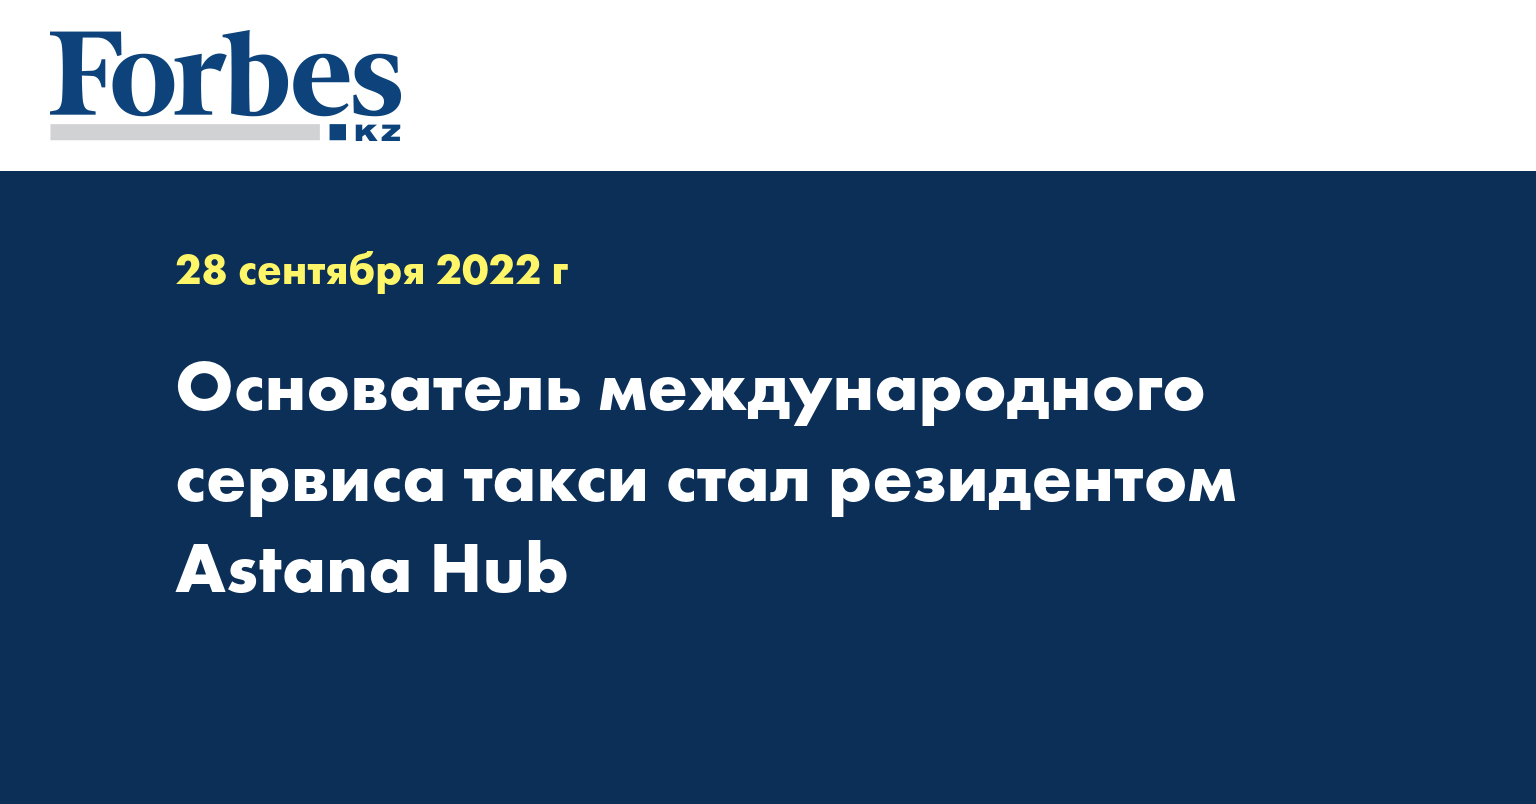 Основатель международного сервиса такси стал резидентом Astana Hub